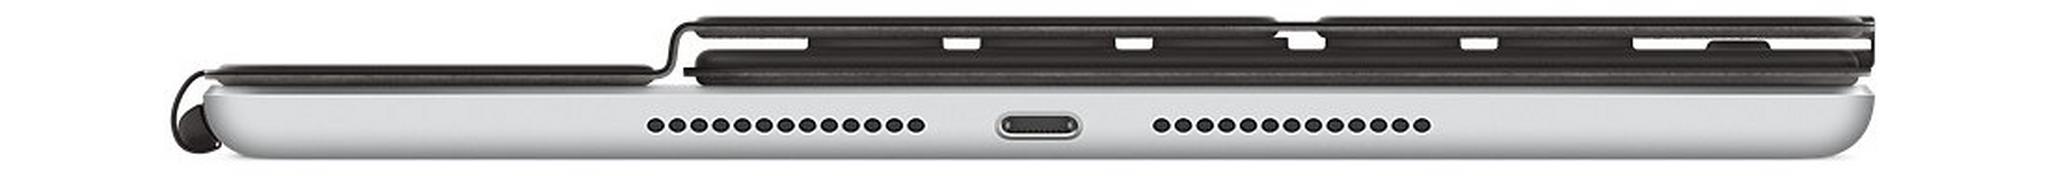 لوحة مفاتيح أبل الذكية فوليو لأيباد (الجيل السابع) و لأيباد آير (الجيل الثالث)